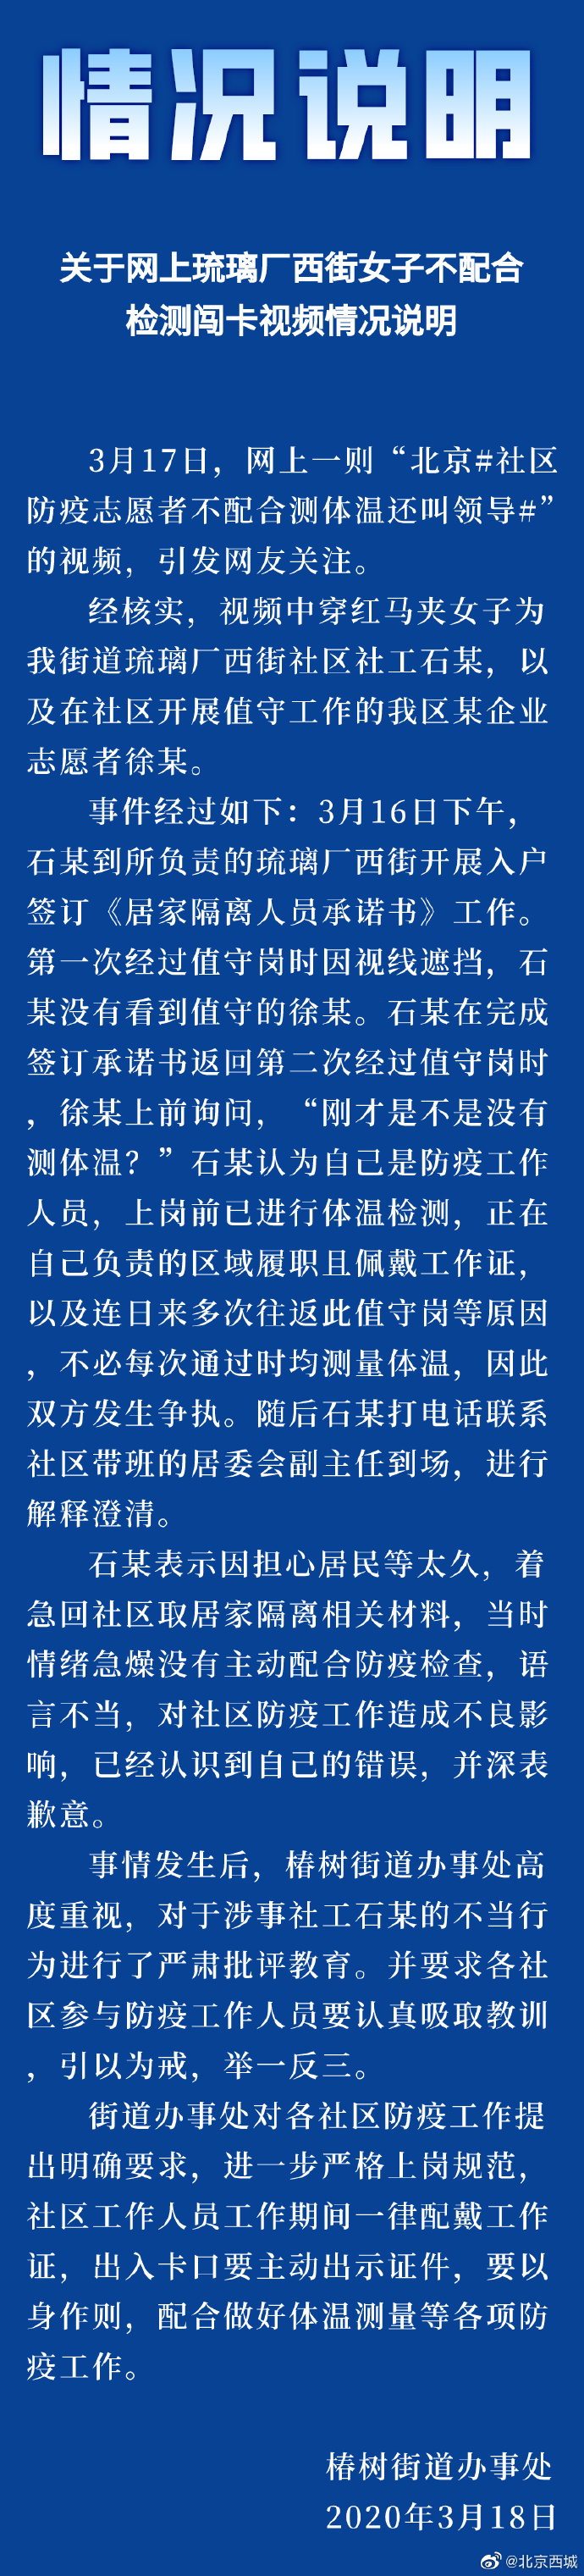 北京西城发布关于网上琉璃厂西街女子不配合检测闯卡视频情况说明